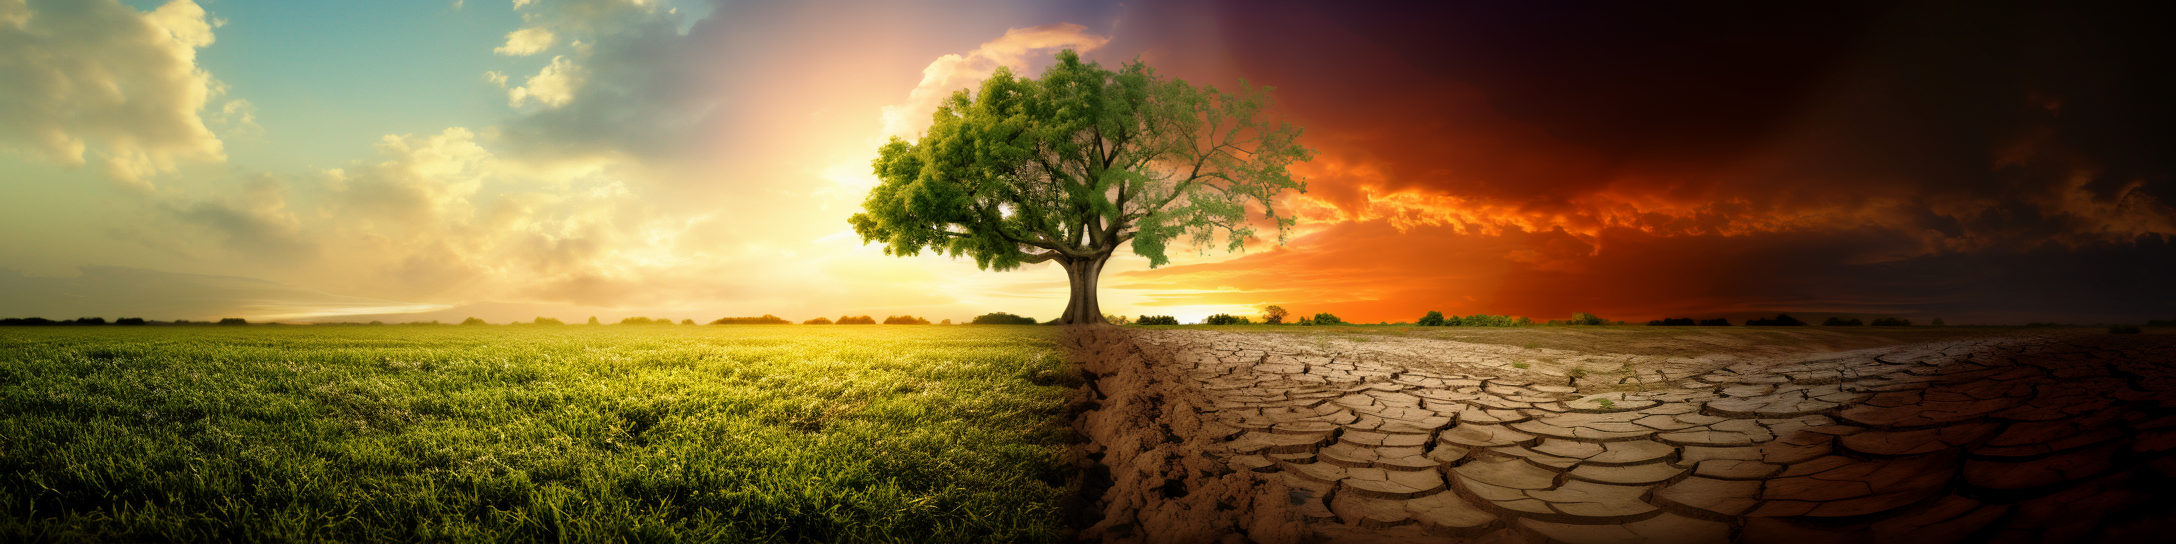 Kerronnallinen diptyykki ilmastonmuutoksen mahdollisista vaikutuksista. Kuvan keskellä kuvan kahteen osaan jakava puu. Vasemmalla puolella vehreää niittyä ja seesteistä taivasta, oikealla puolella kuivuutta ja synkkää taivasta.